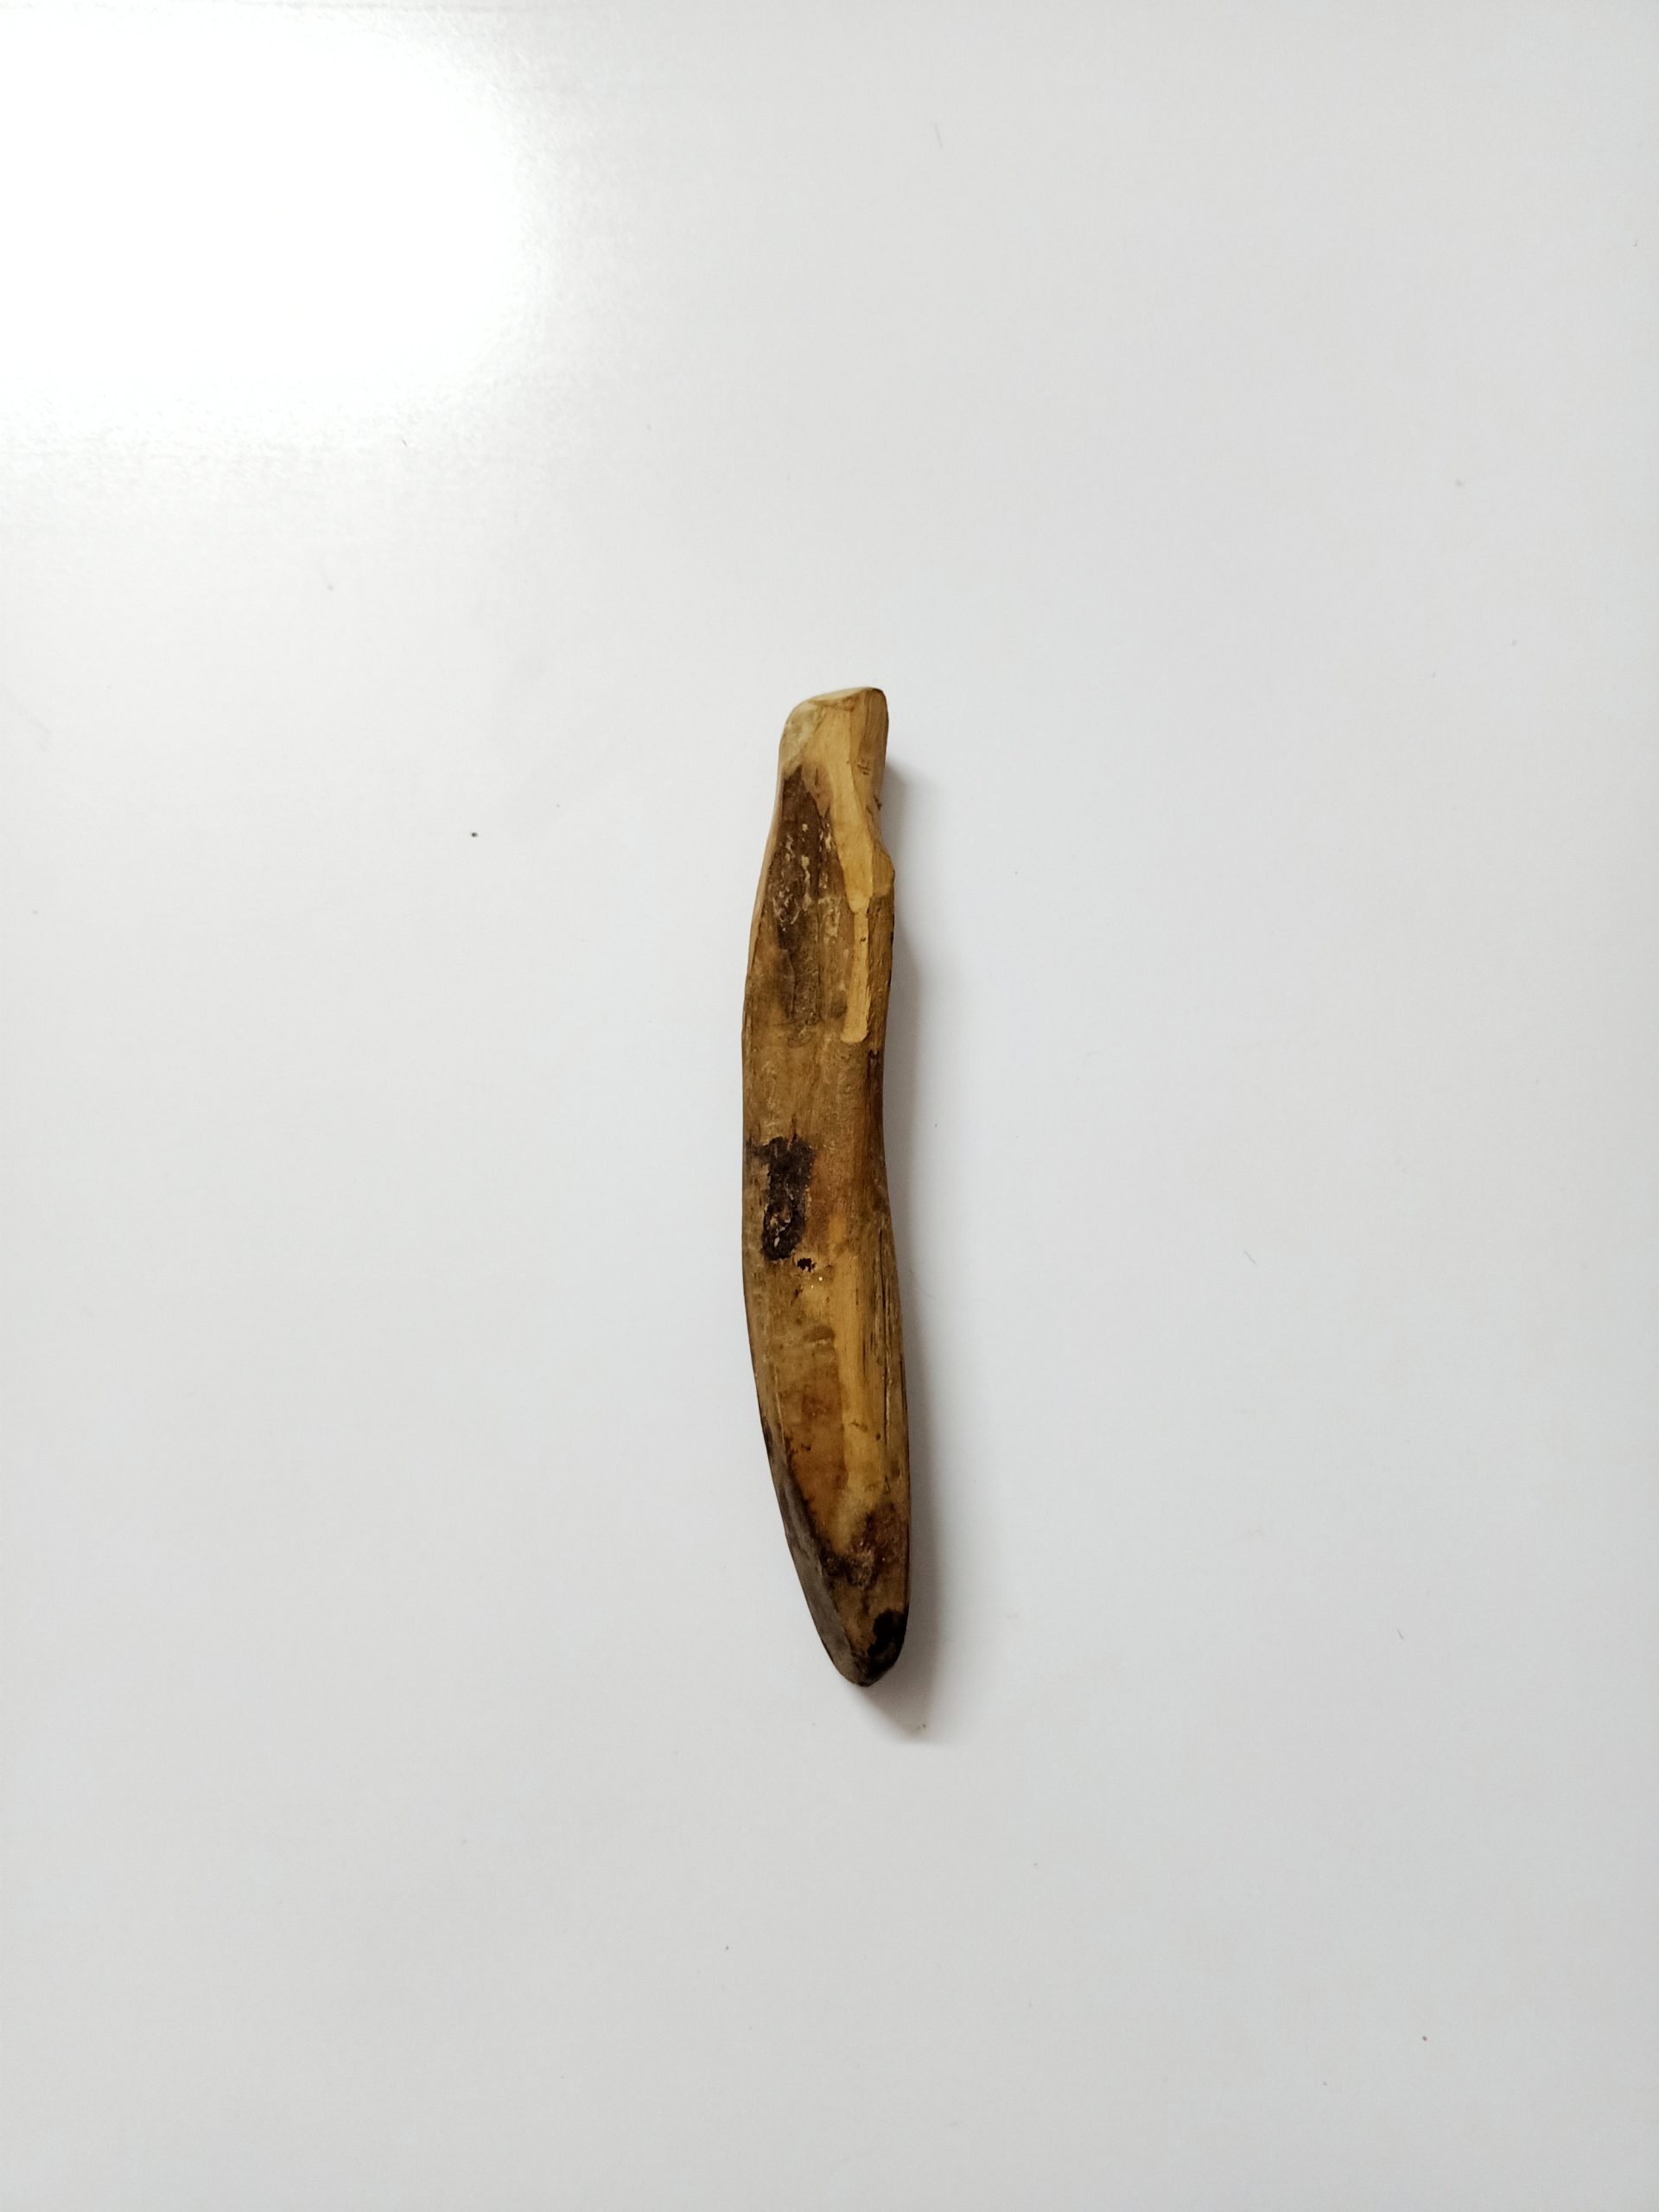 A wooden piece